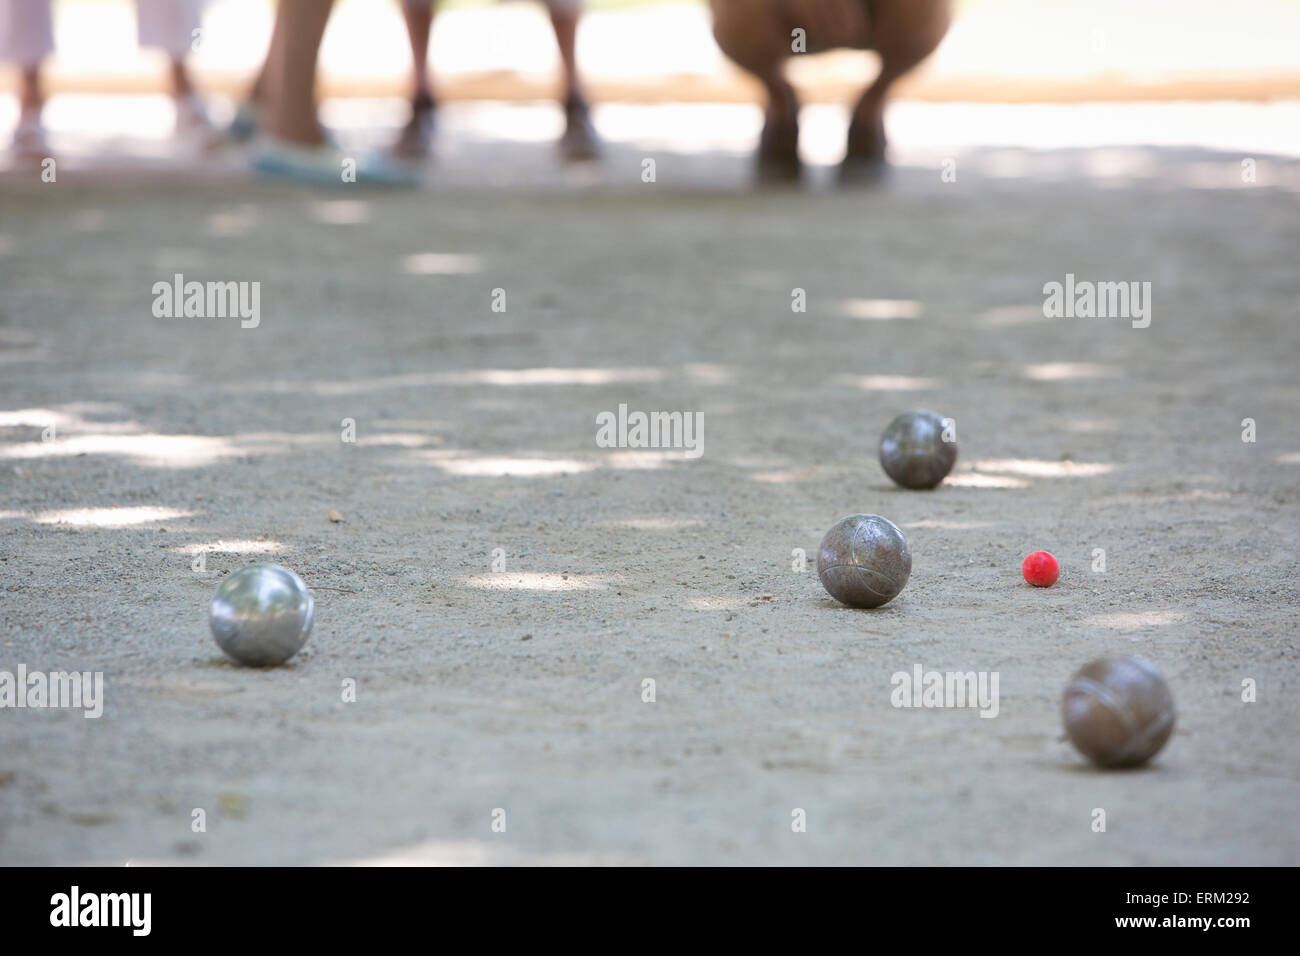 Un gioco di bocce in corso sul terreno sabbioso in ombra. Foto Stock